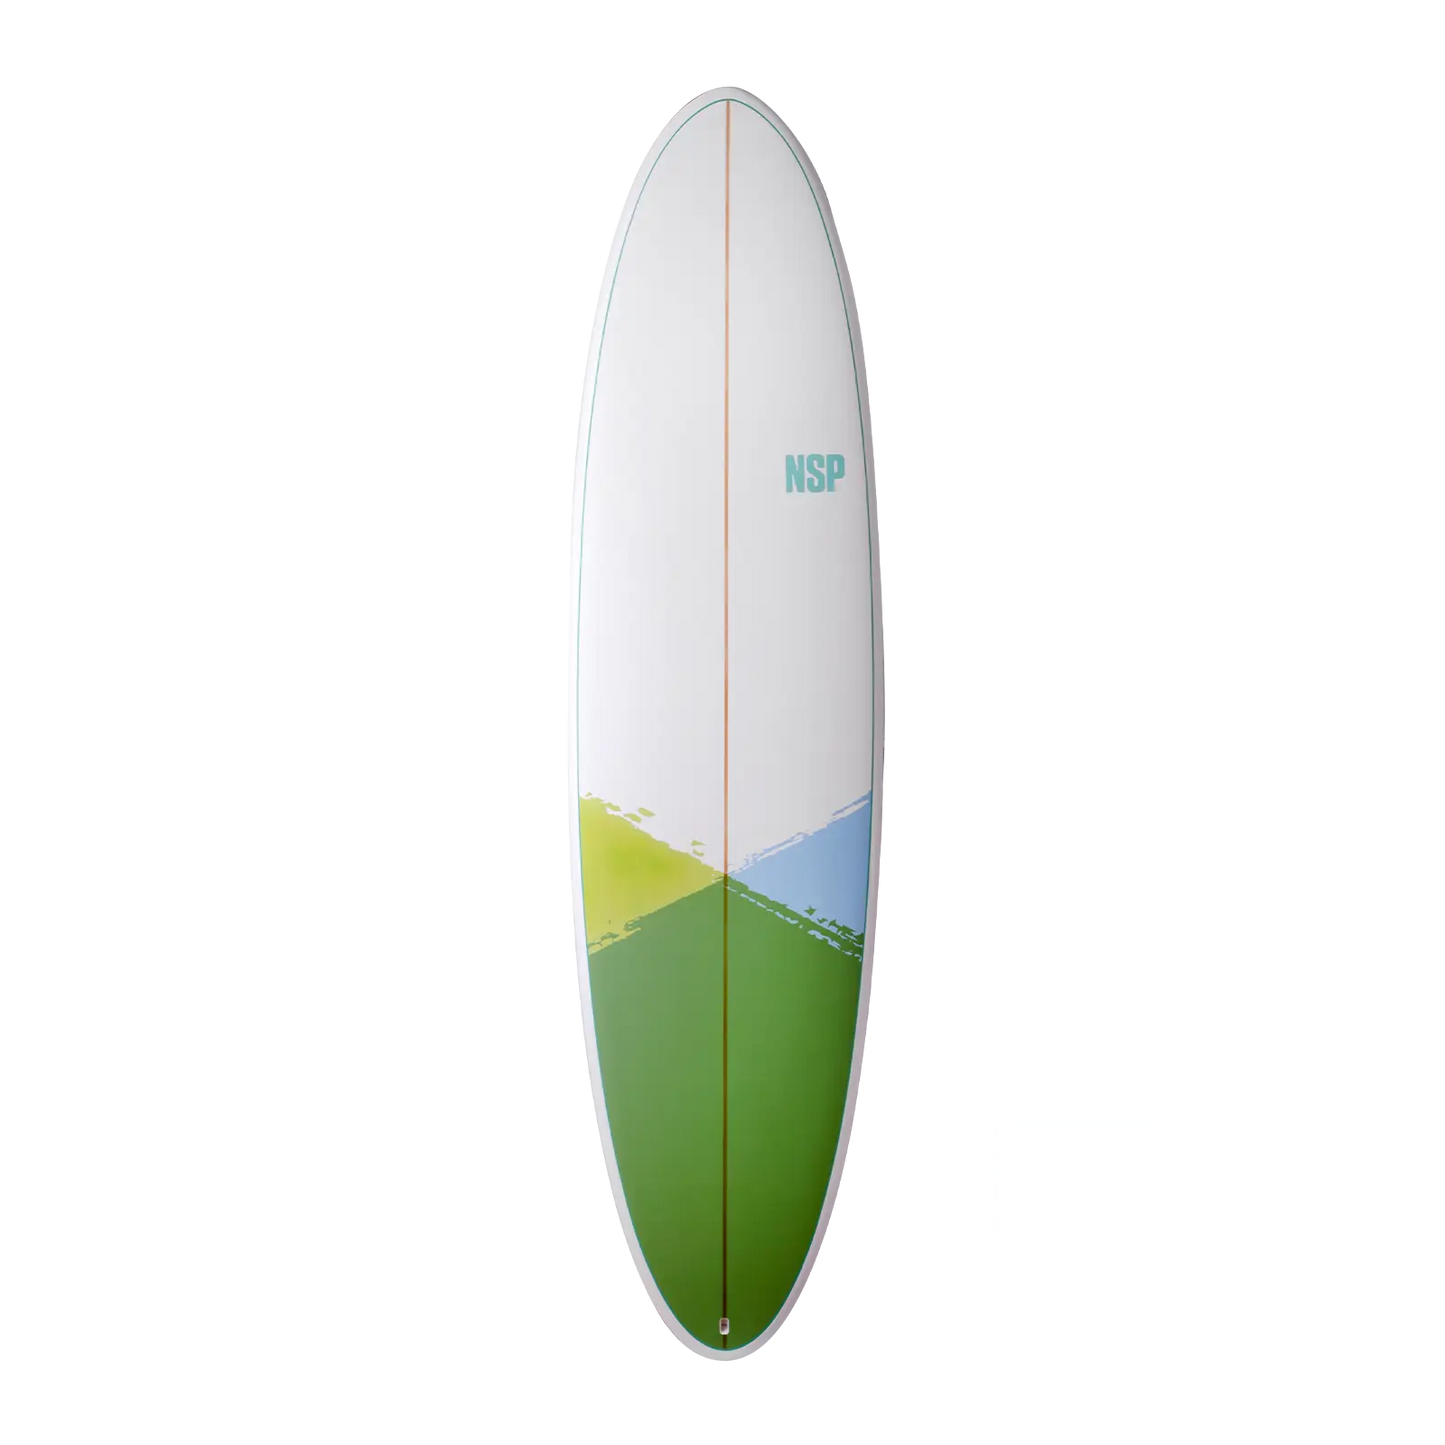 Funboard Surfboards NSP E+ Green Water